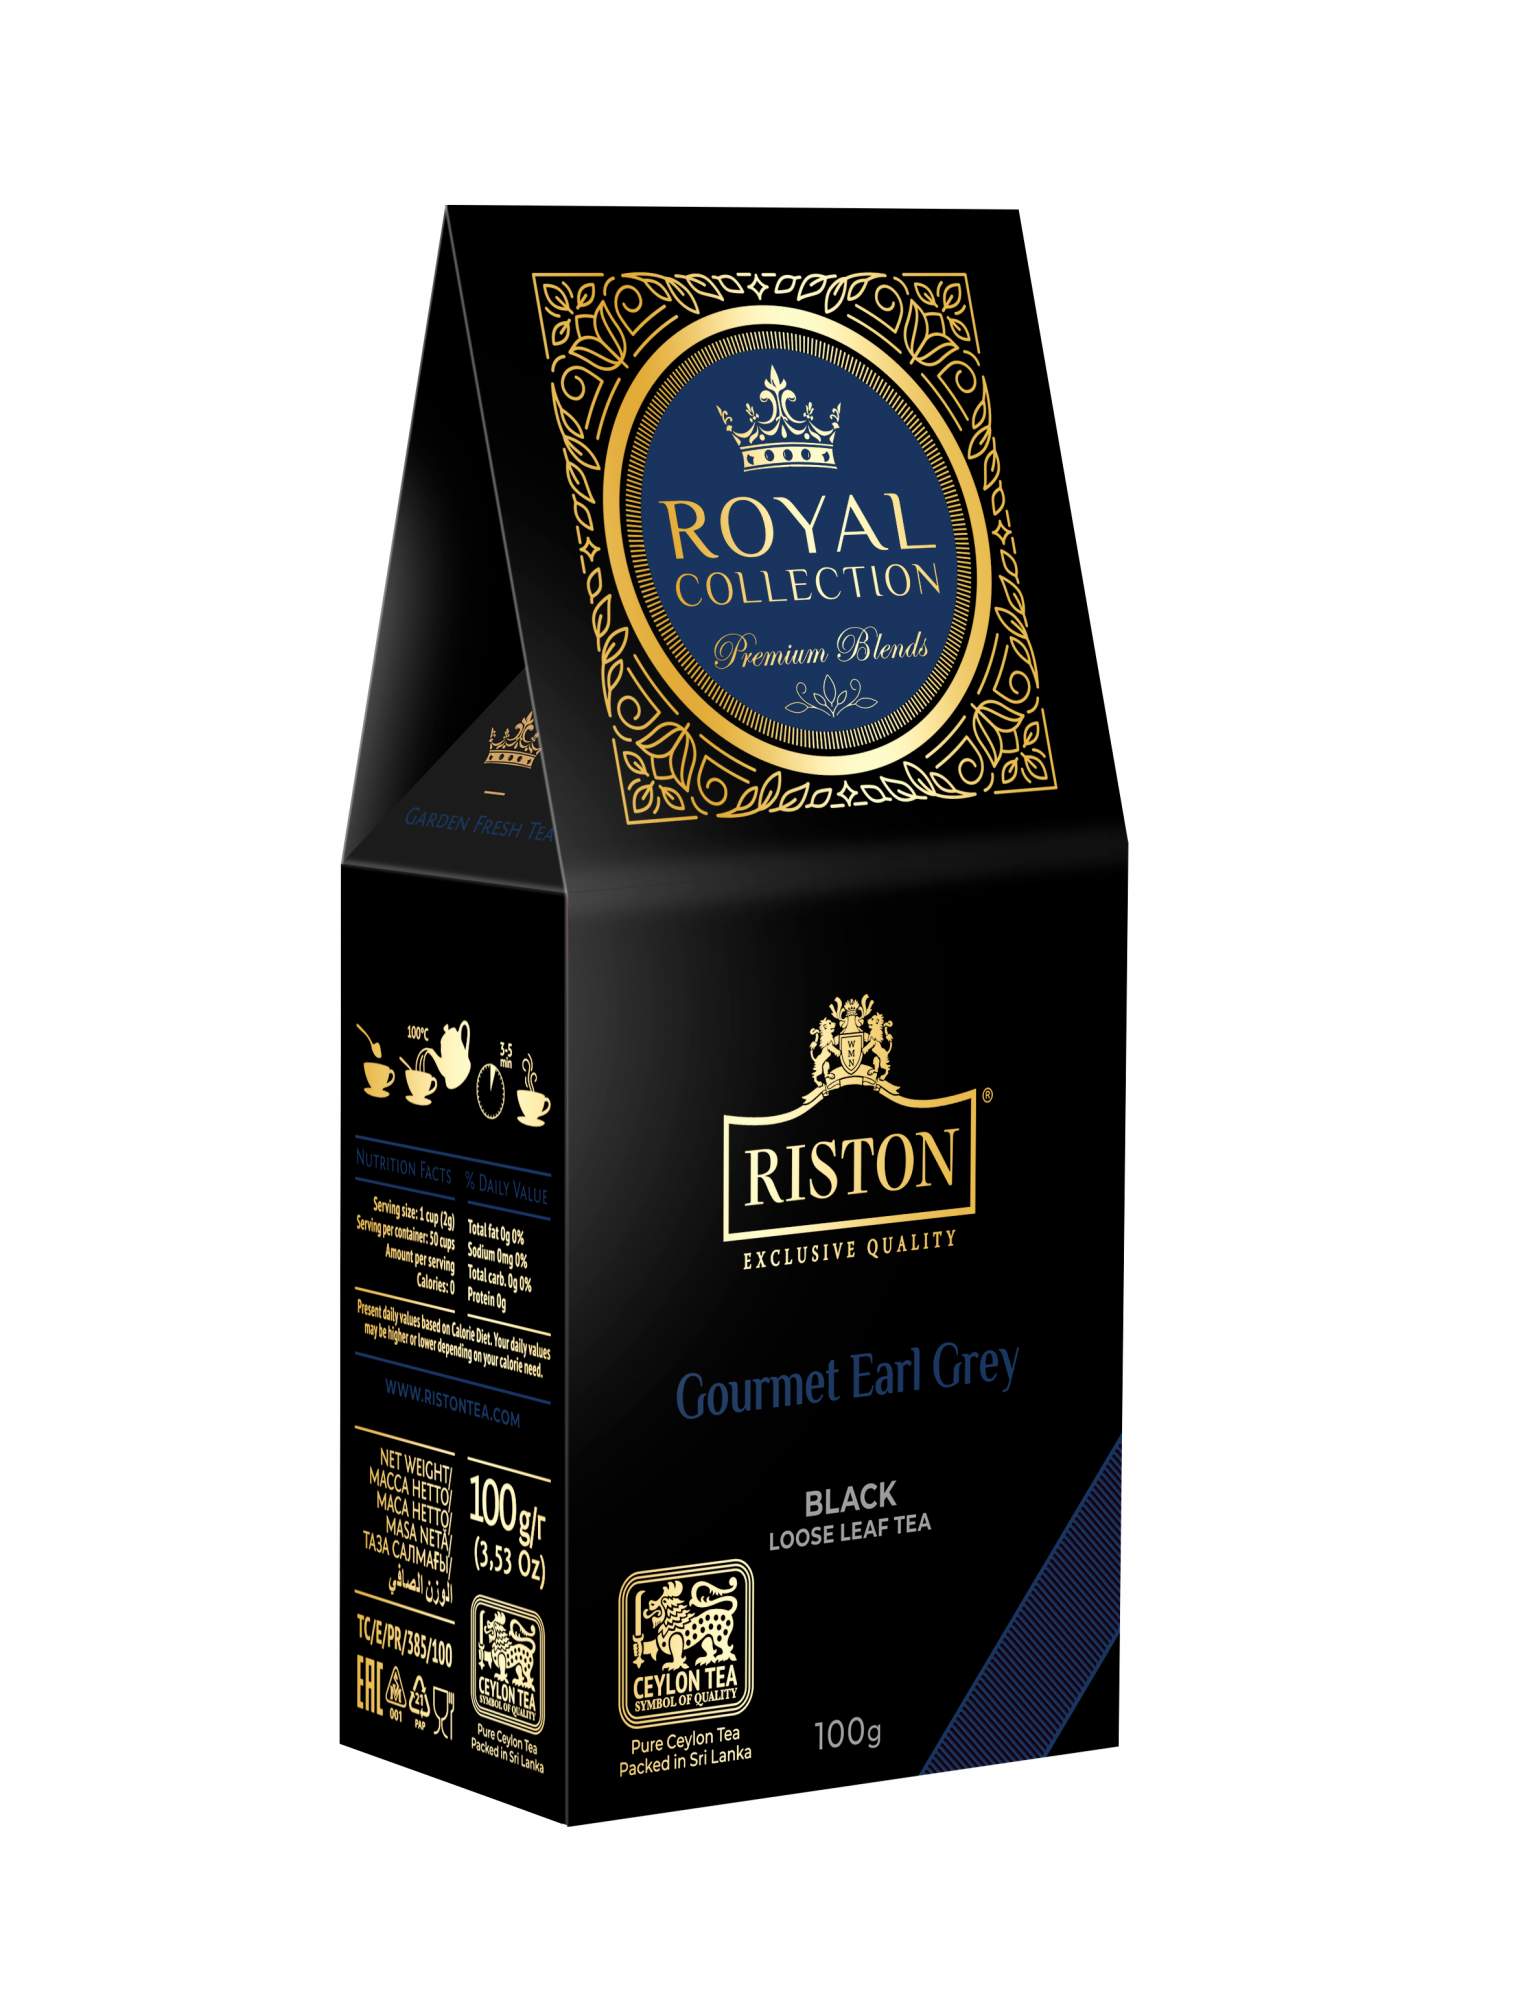 Чай Riston Royal Collection Gourmet Earl Grey черный среднелистовой 100г